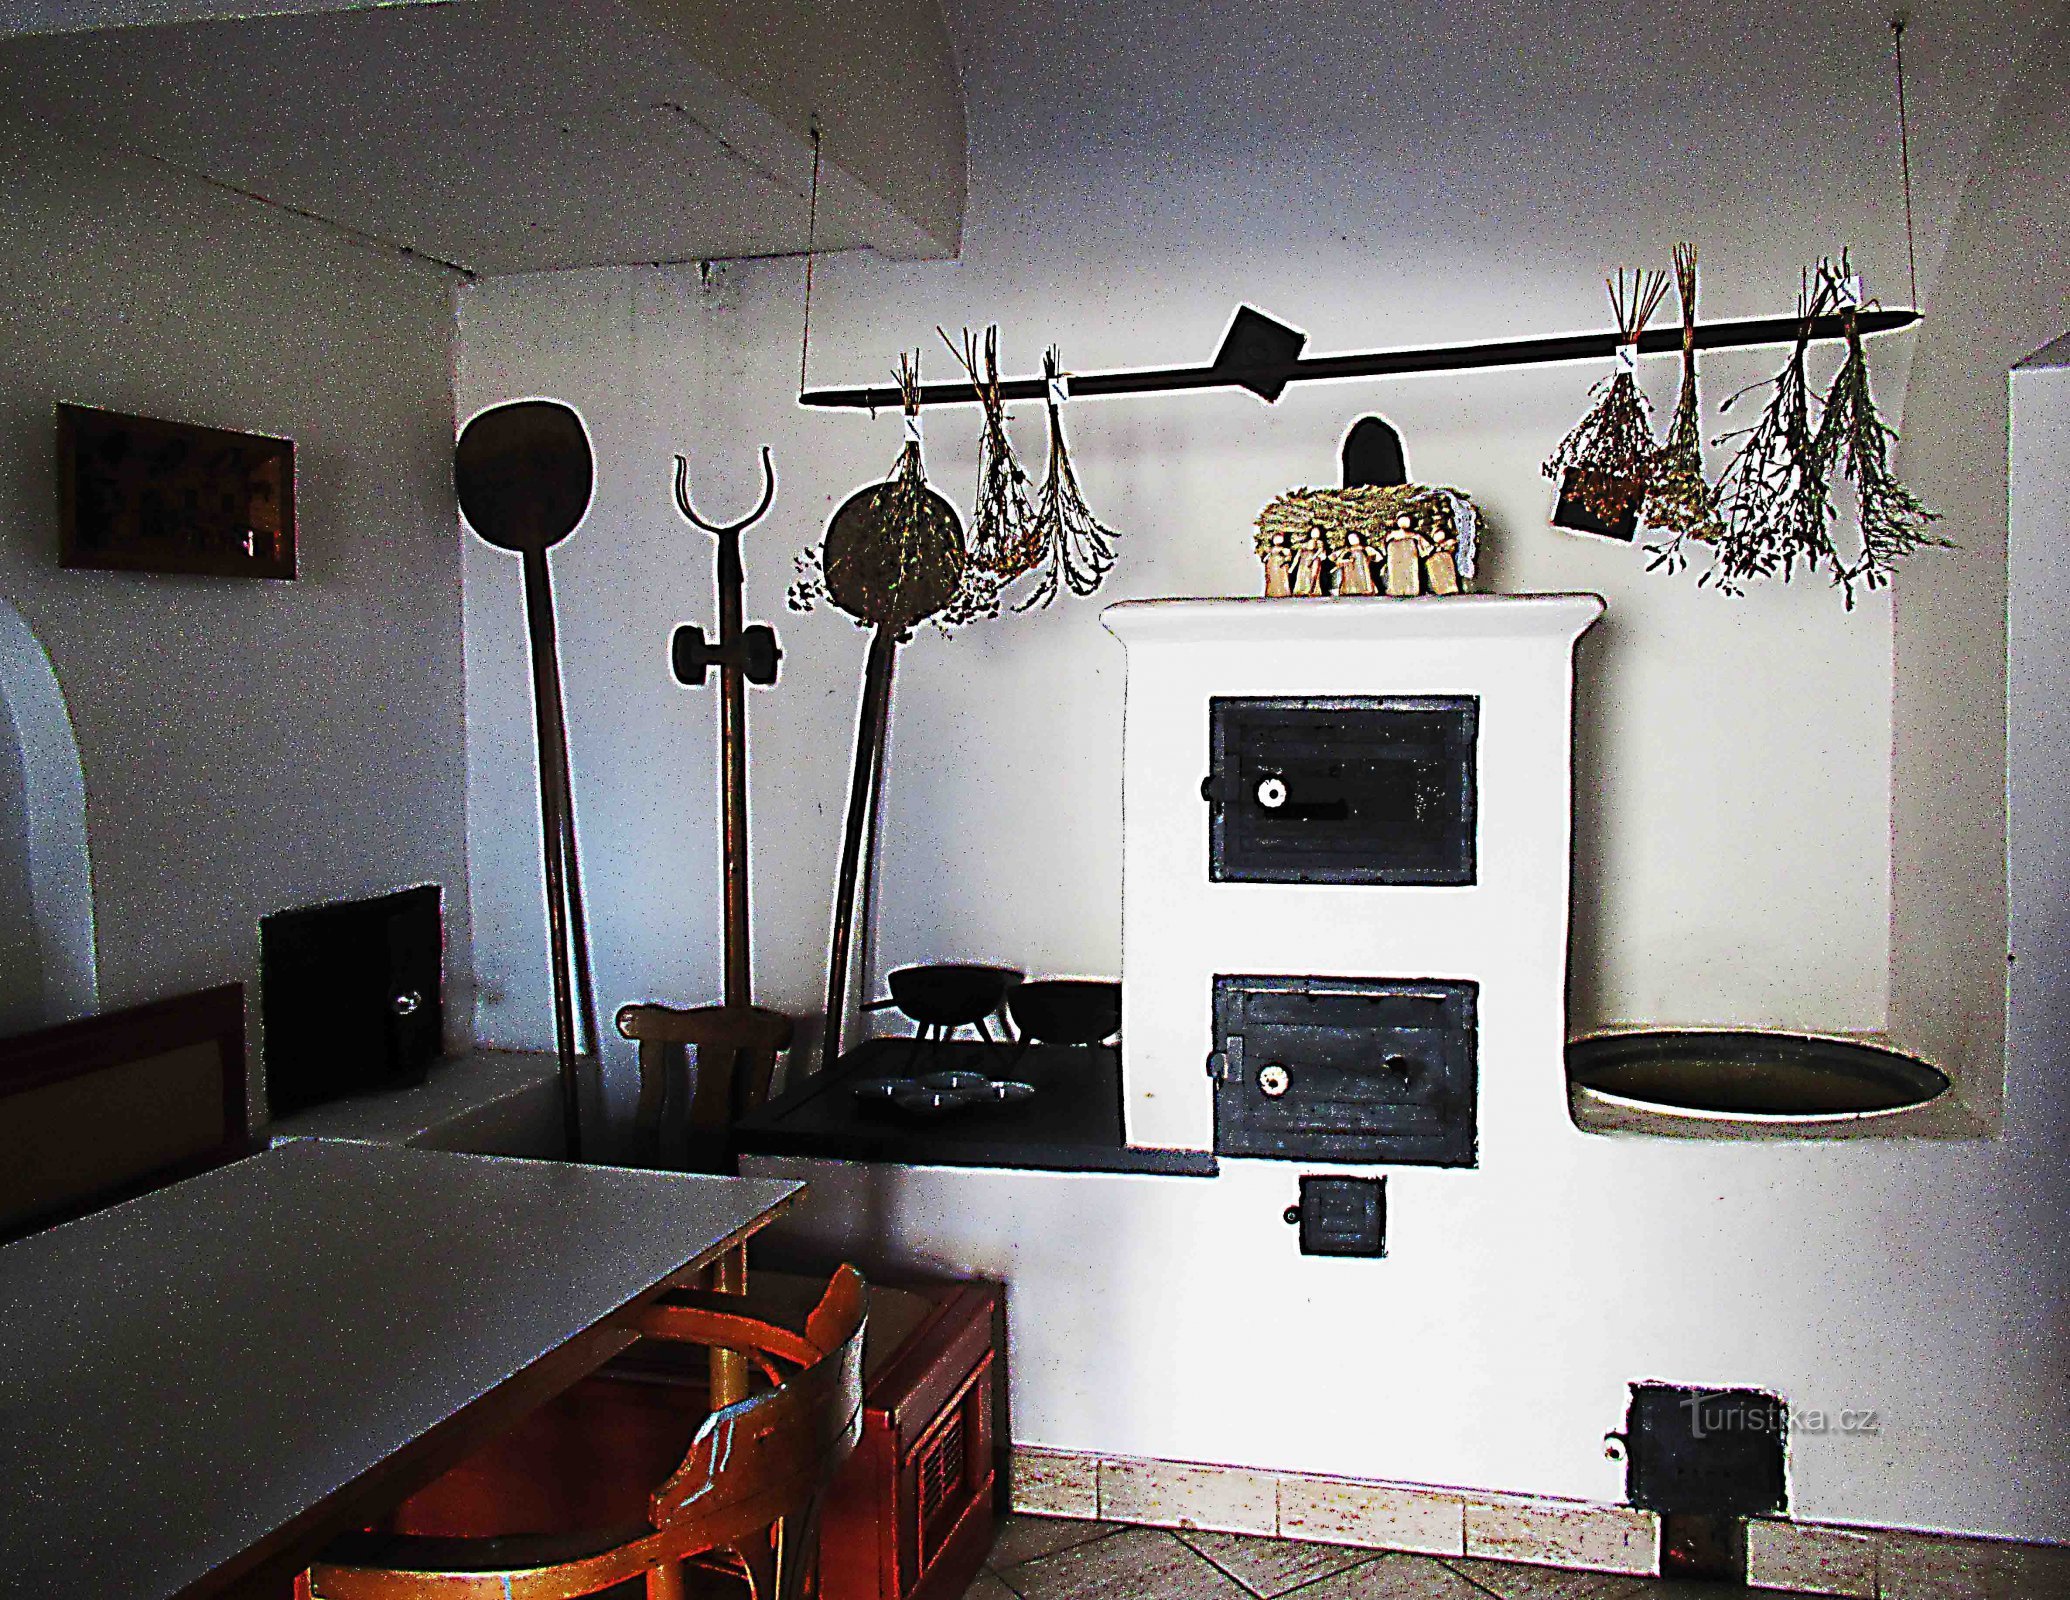 Egy kis kovácsmúzeum Zeman kovácsművében, Holešovban